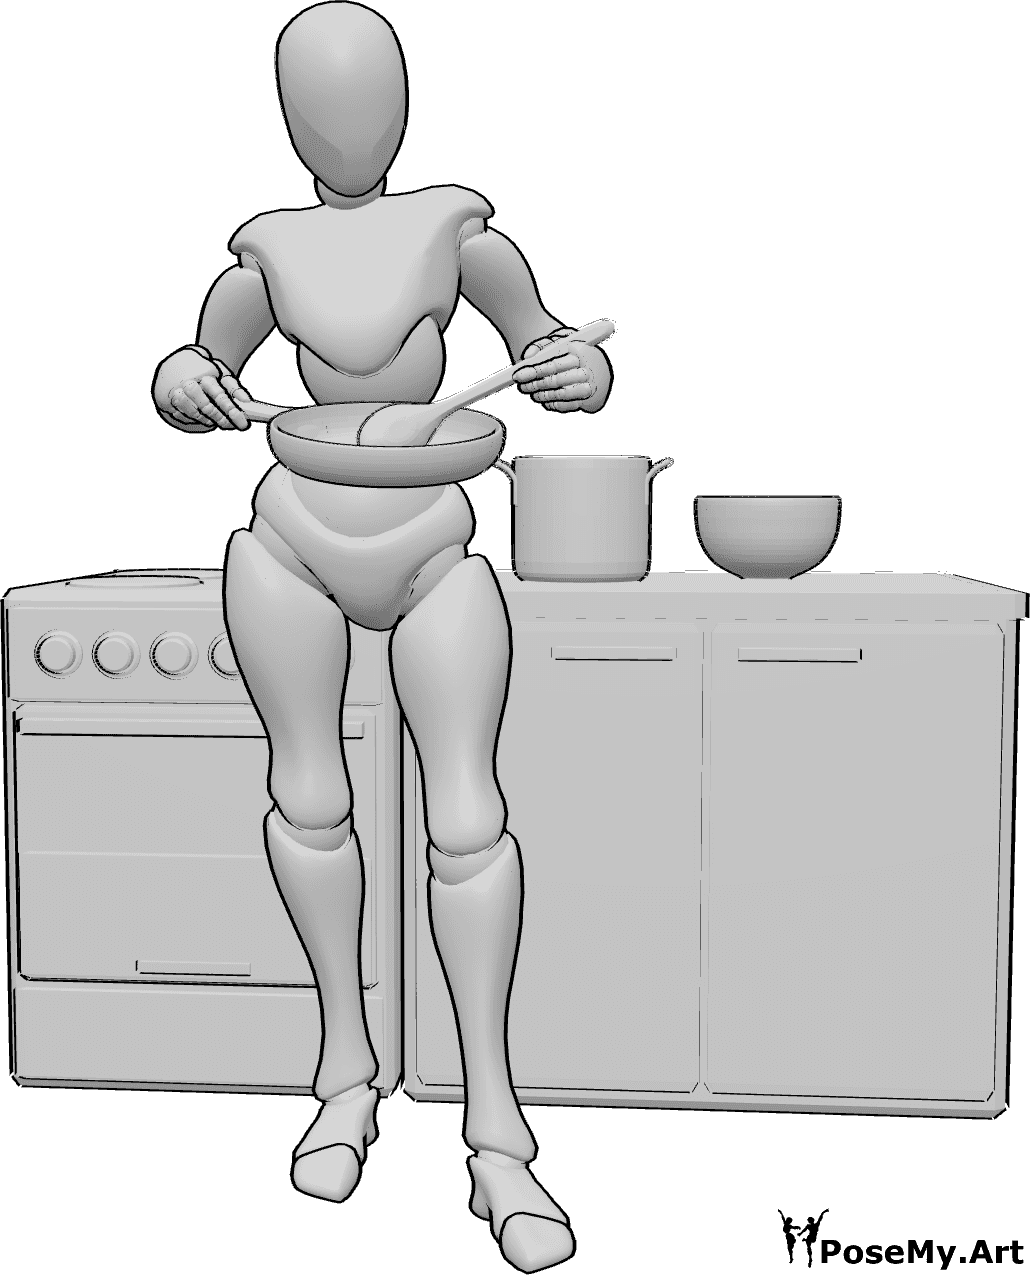 Posen-Referenz- Stehende rührende Kochpose - Frau steht, hält einen Topf in der rechten Hand und rührt mit einem Holzlöffel in der linken Hand